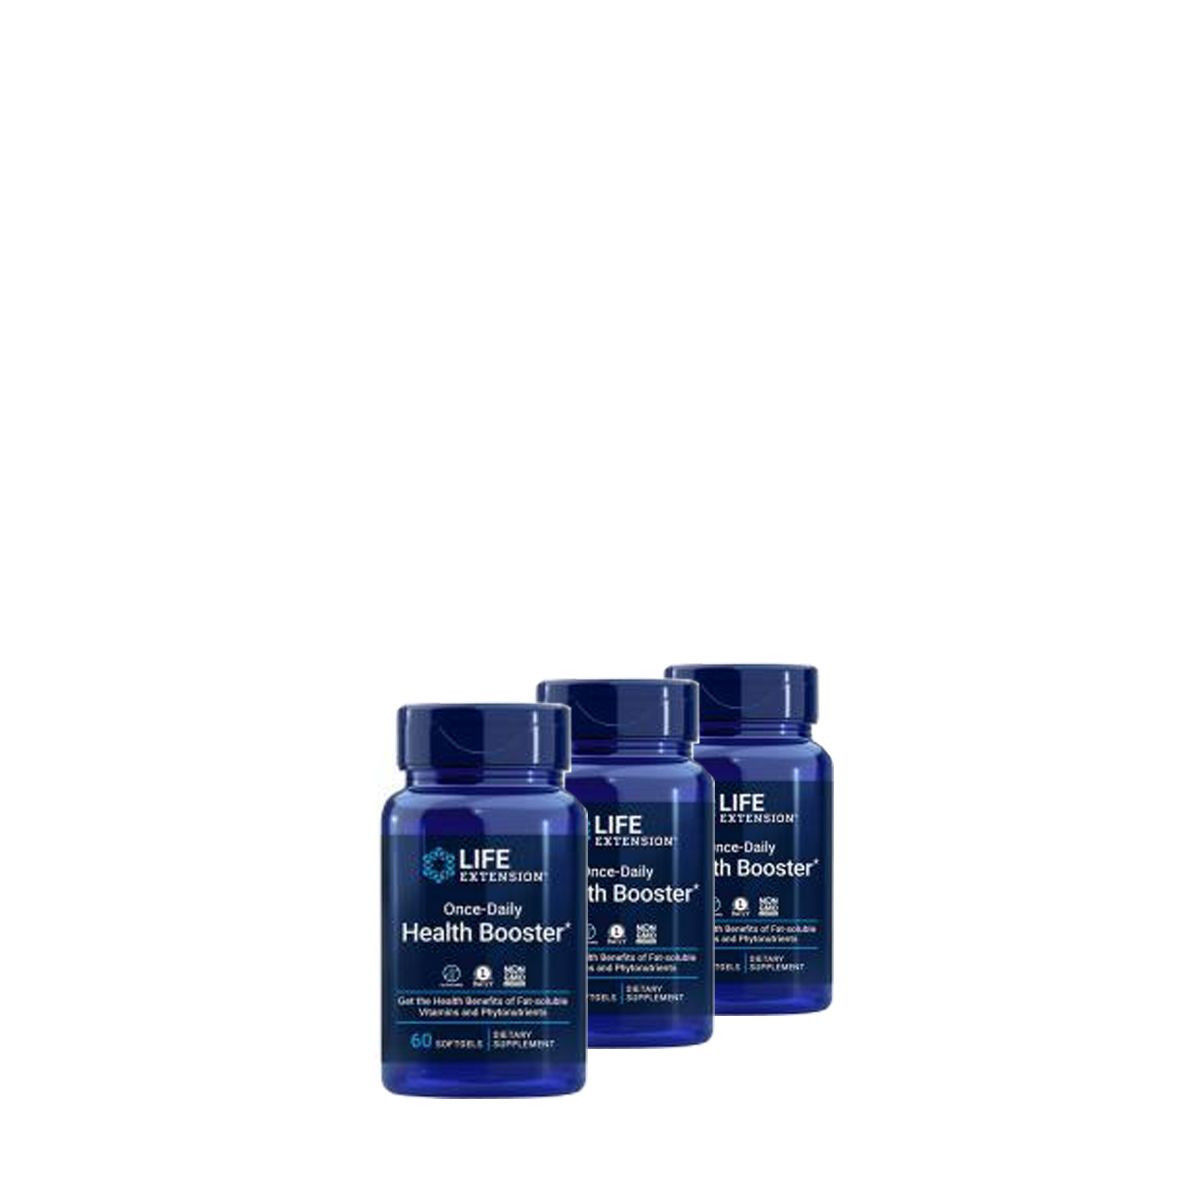 Egészségfokozó komplex speciális vitaminokkal és fitonutriensekkel, Life Extension Health Booster, 3x60 kapszula